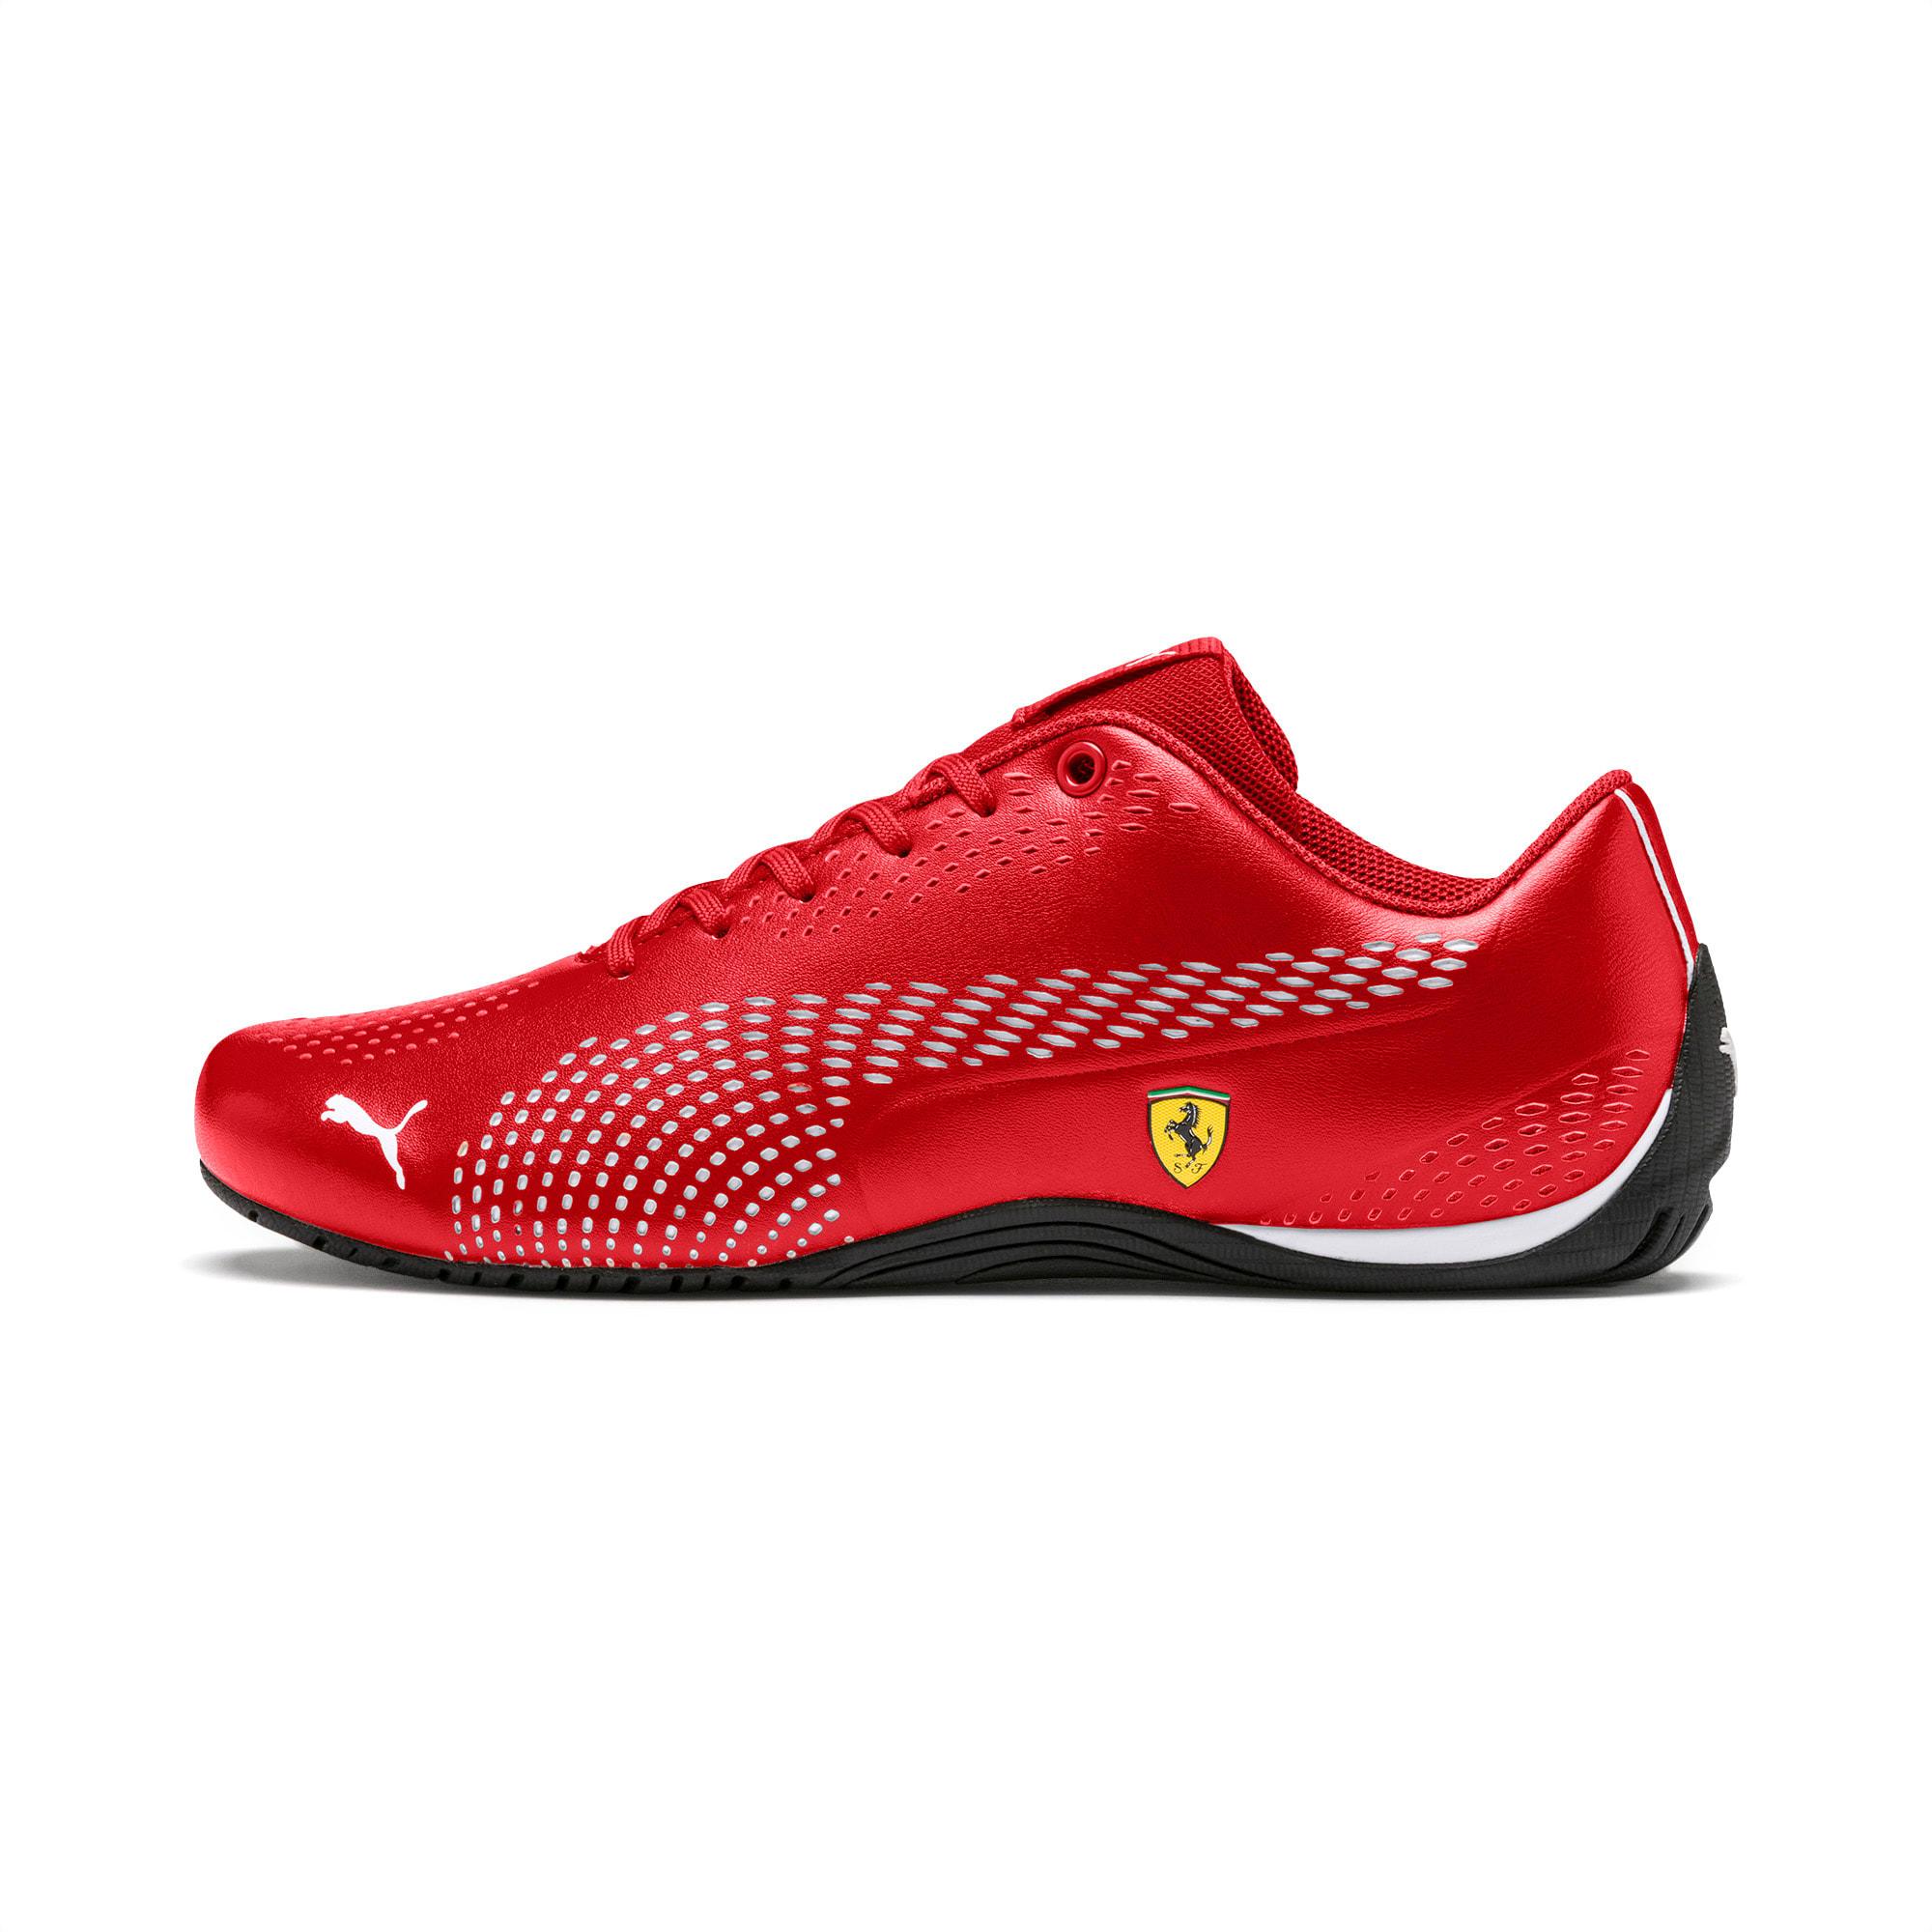 Caius College load PUMA Scuderia Ferrari Drift Cat 5 Ultra Ii Men's Shoes in Red | Lyst